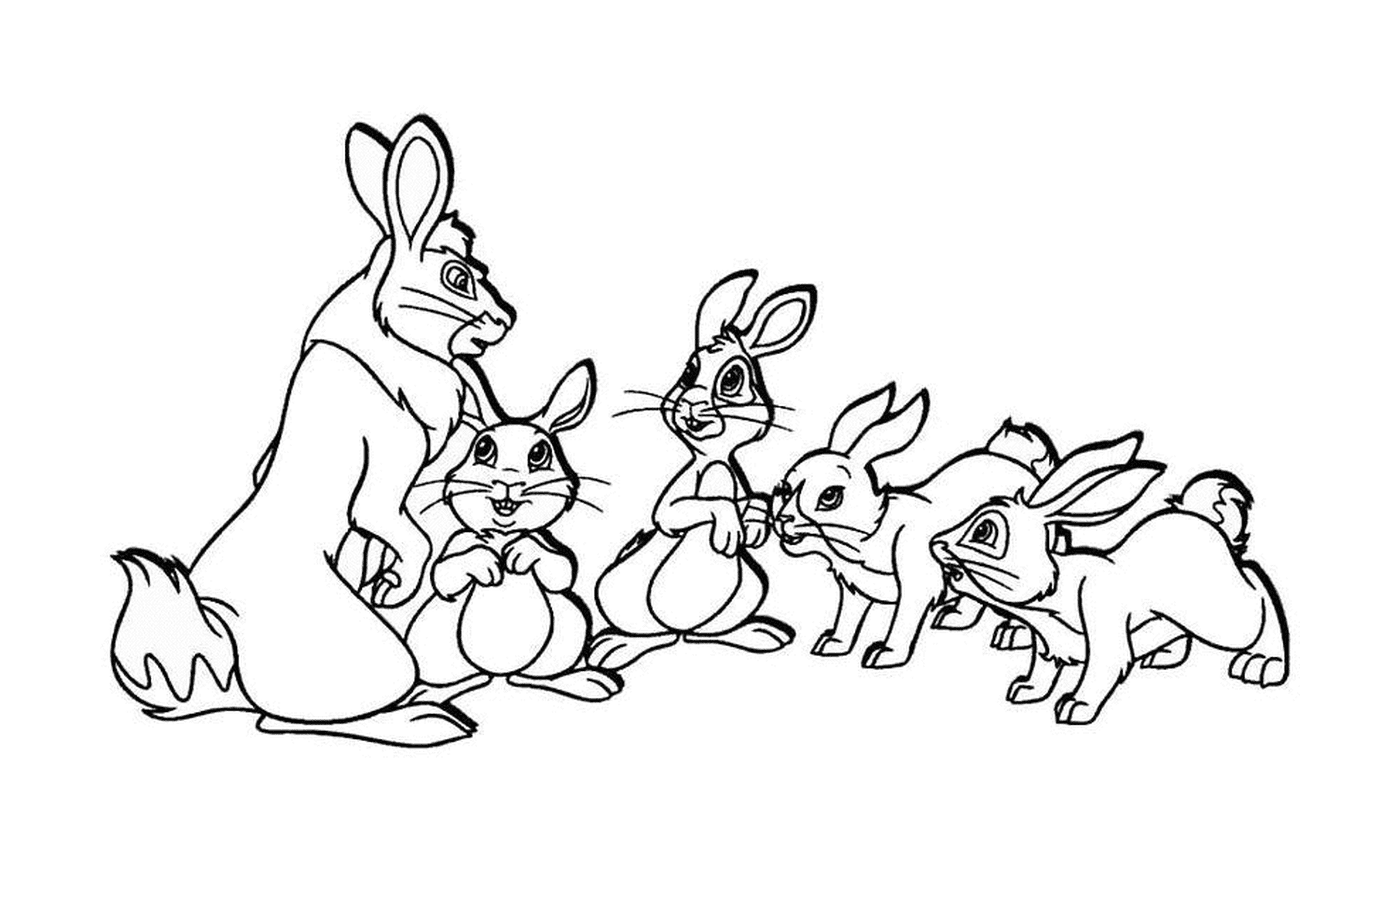  Gruppe von kleinen Kaninchen 